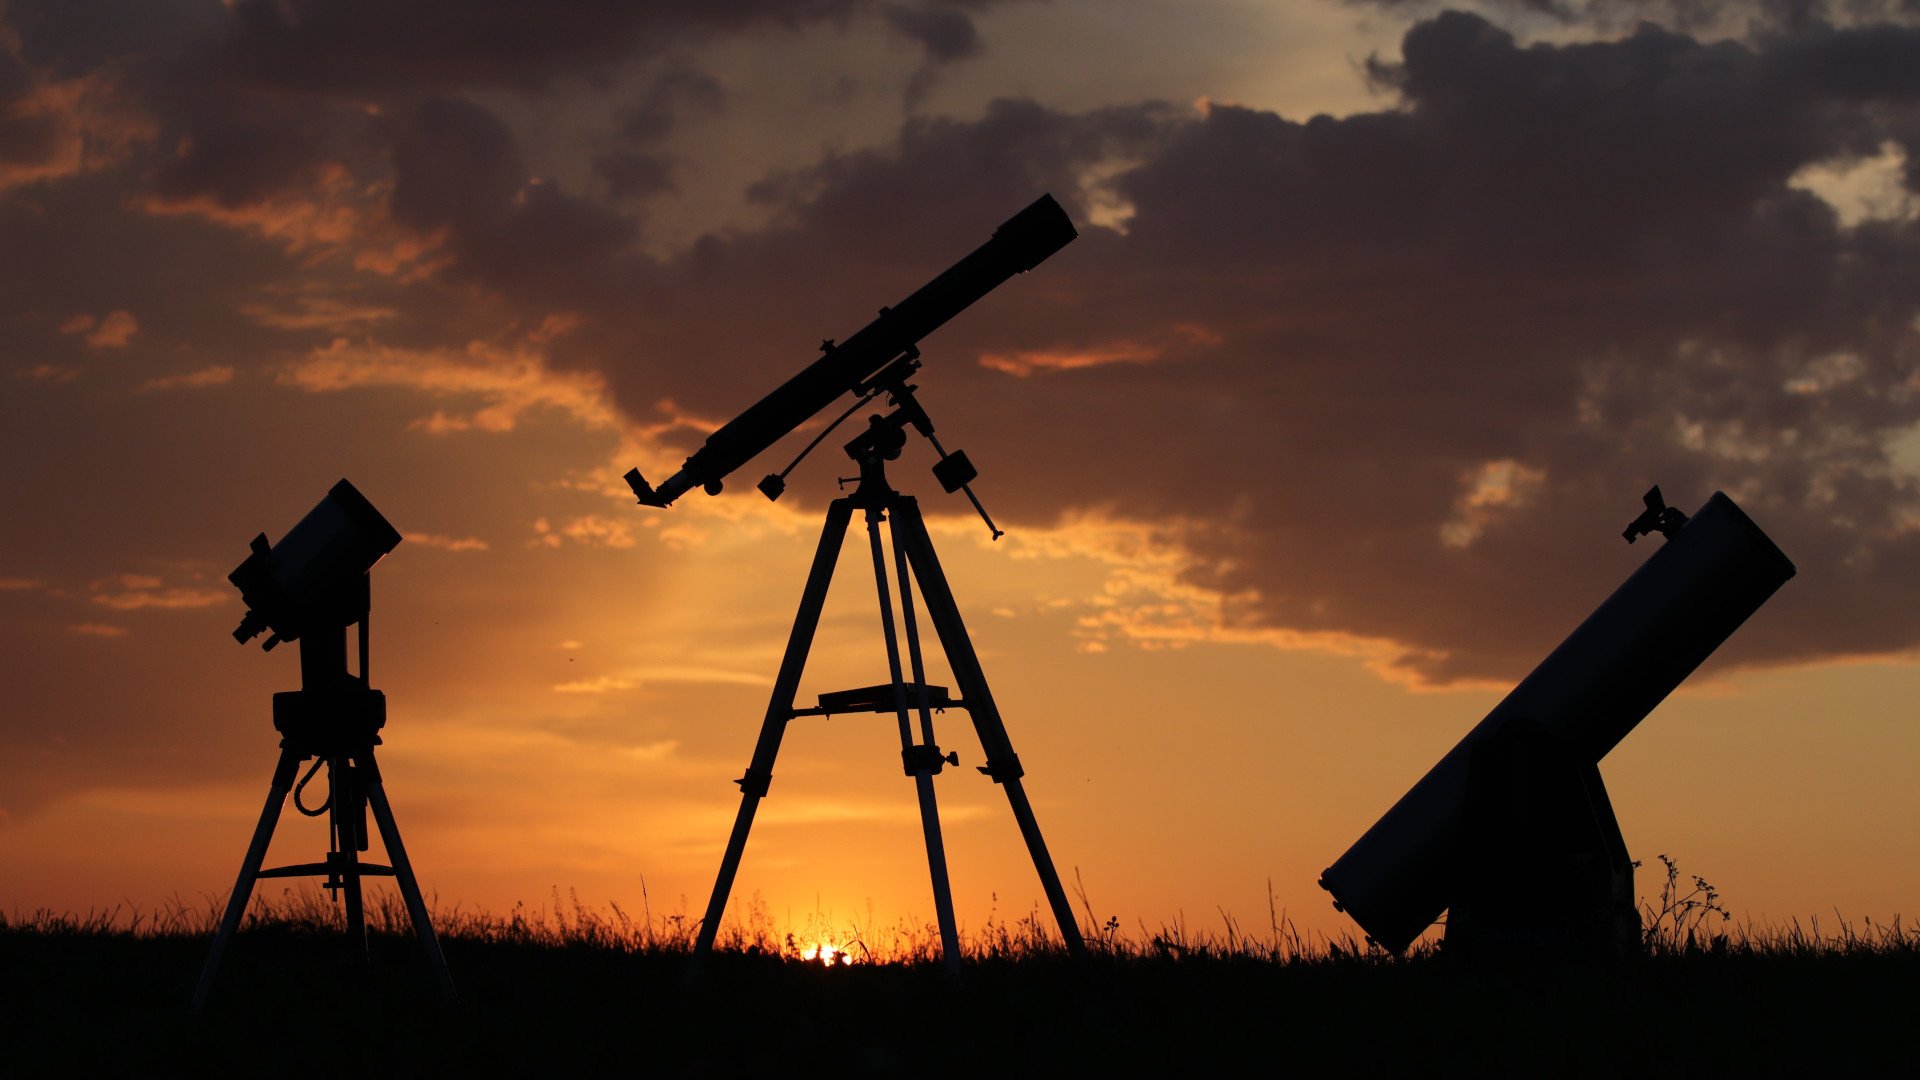 Teleskop kaufberatung - Die besten Teleskop kaufberatung ausführlich analysiert